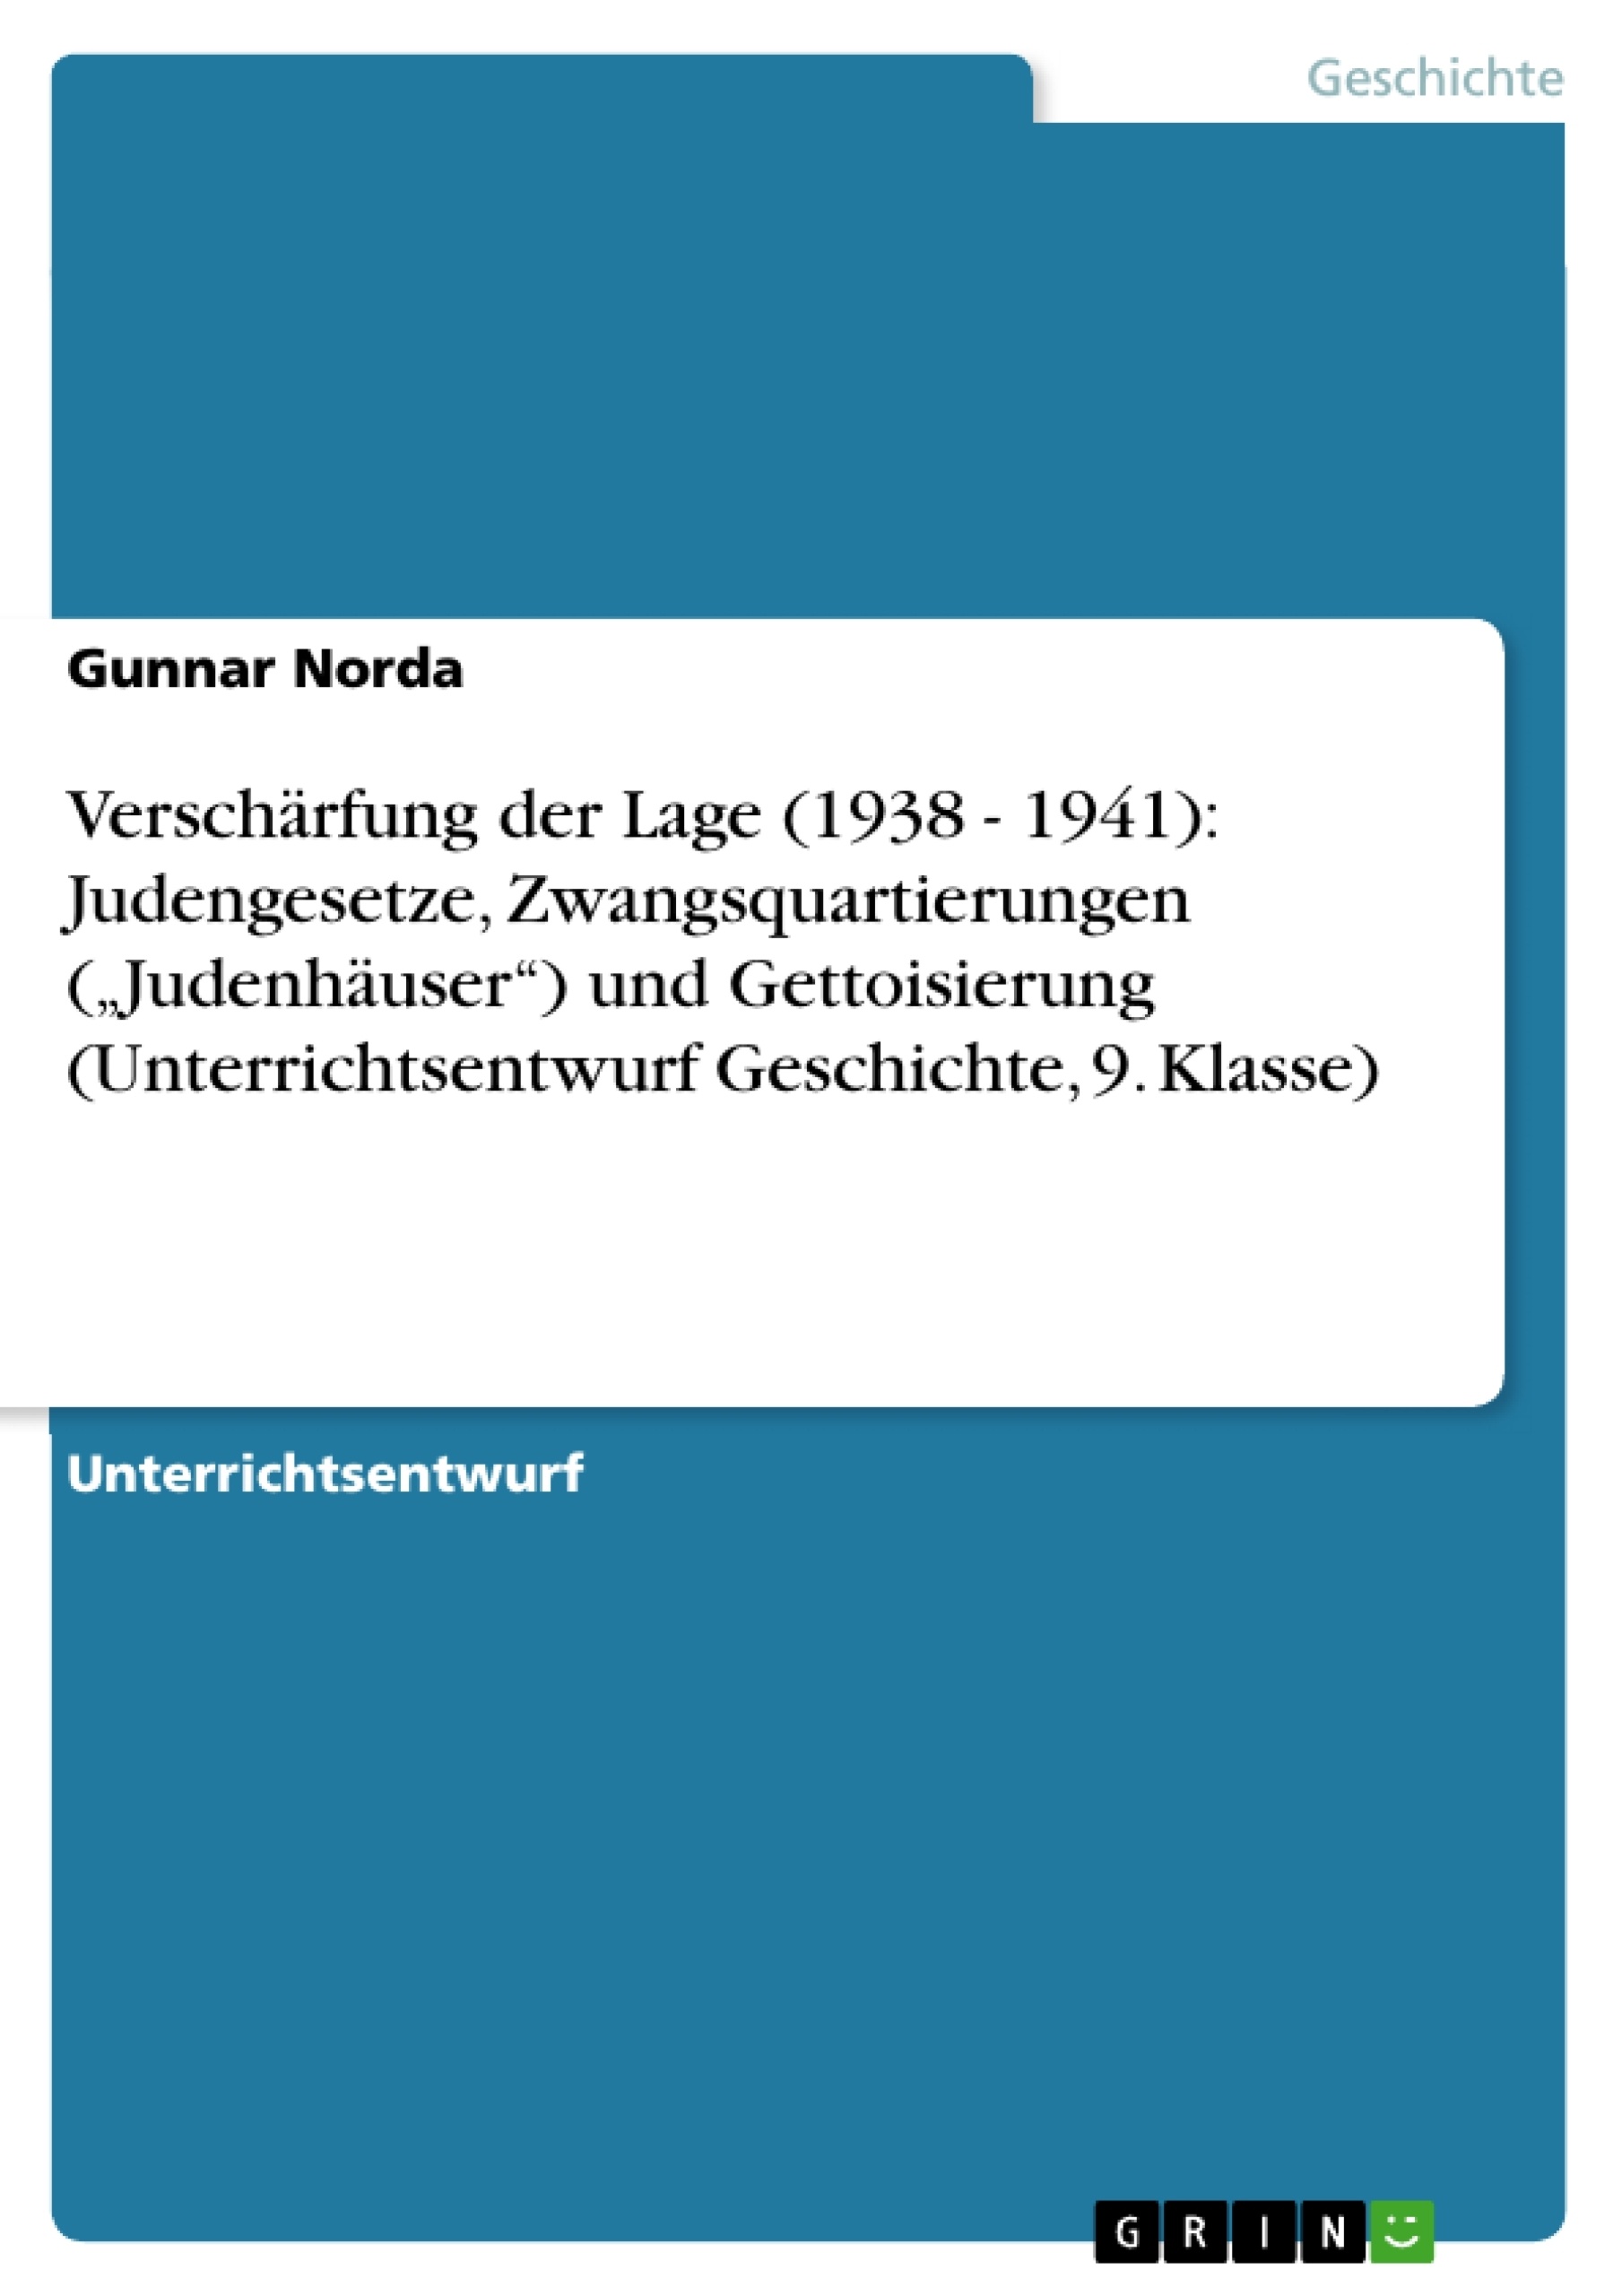 Título: Verschärfung der Lage (1938 - 1941): Judengesetze, Zwangsquartierungen („Judenhäuser“) und Gettoisierung (Unterrichtsentwurf Geschichte, 9. Klasse)